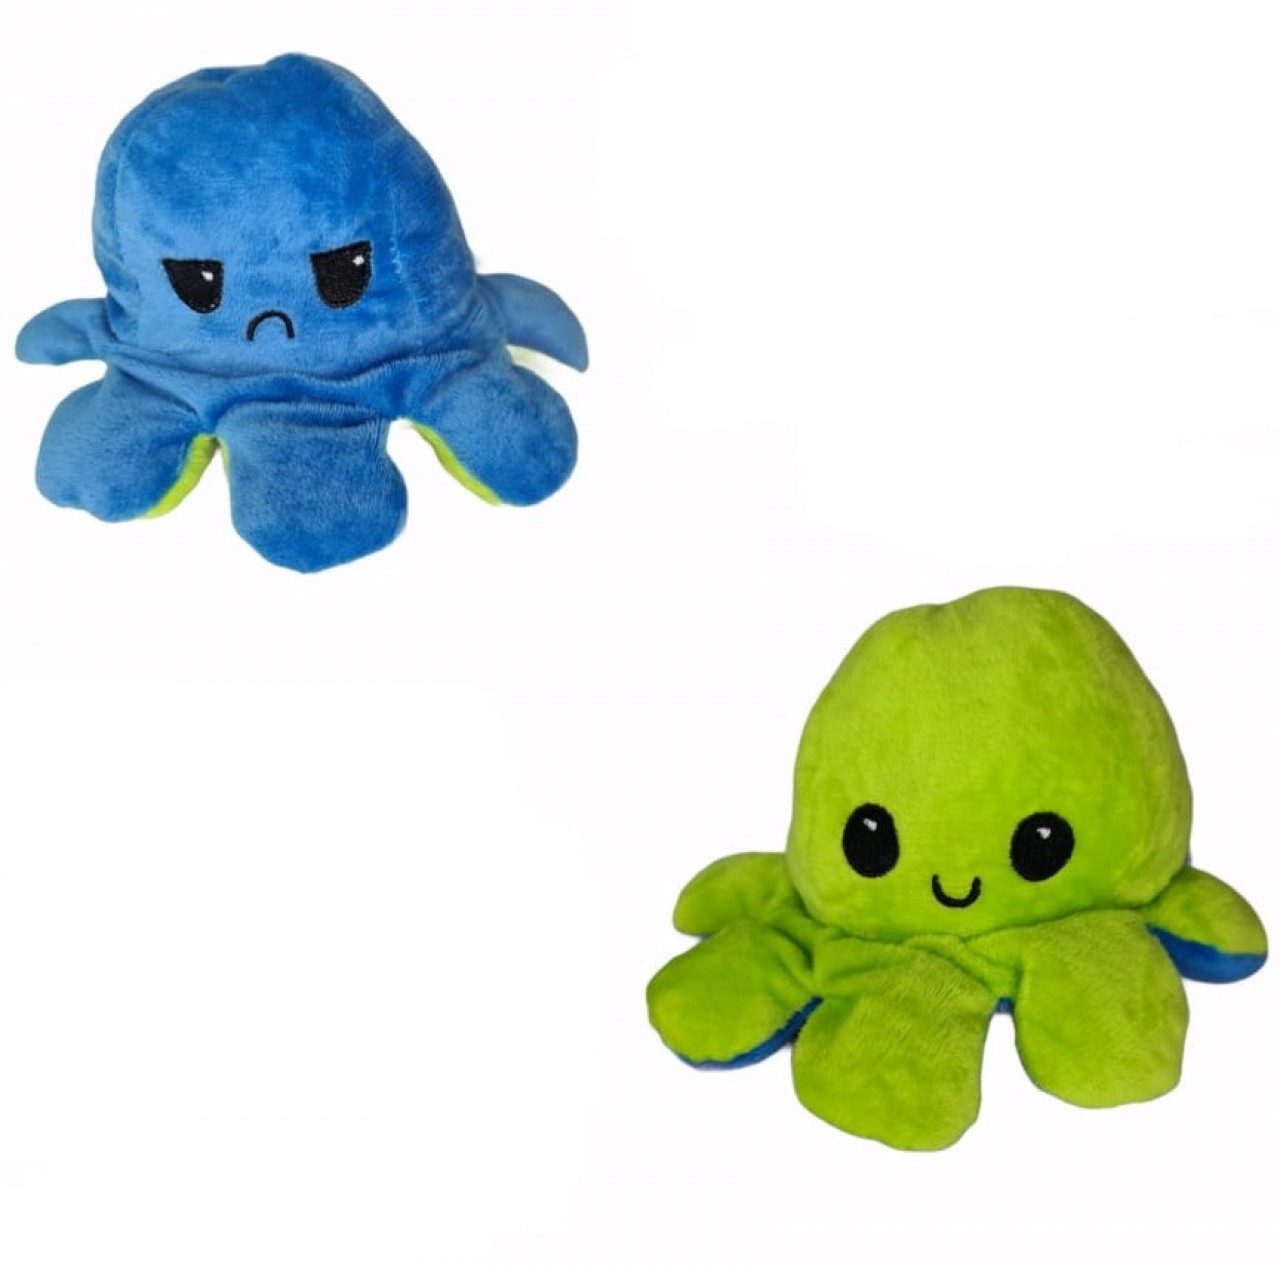 Χταπόδι διπλής όψης λούτρινο emotional reversible octopus plush 12 εκ - 5323 - Μπλε / Πράσινο λαχανί